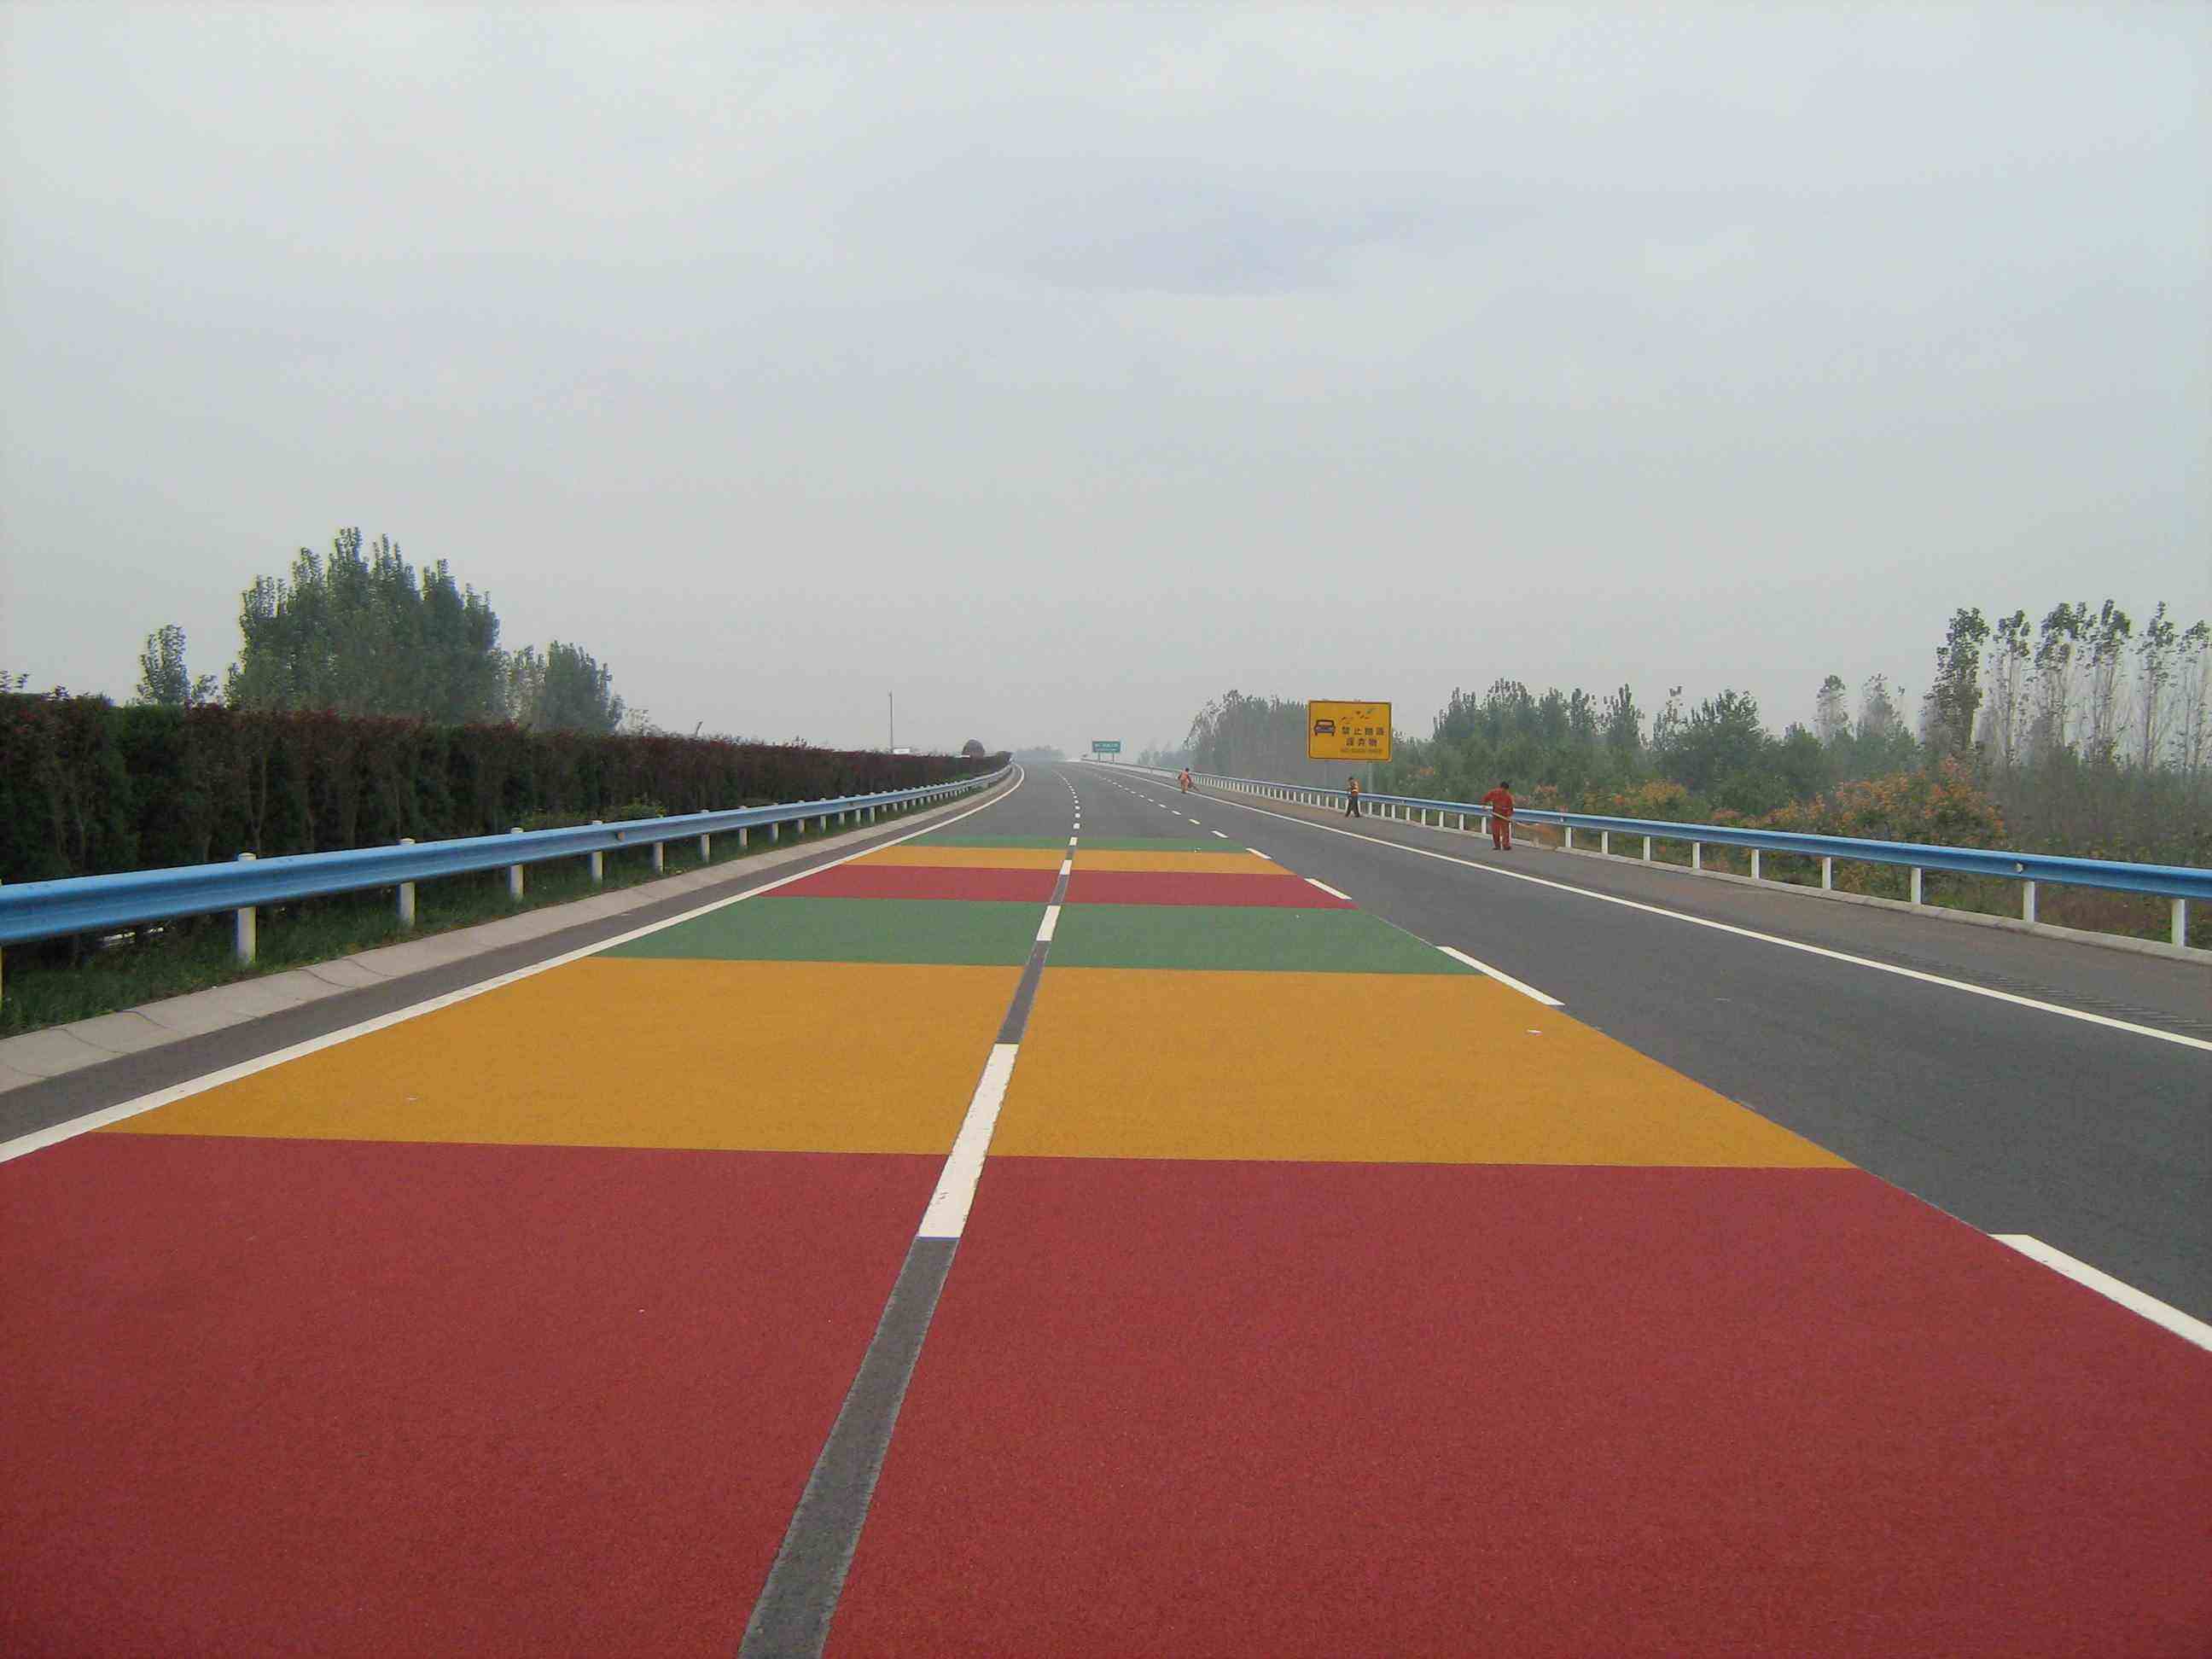 Colored ceramic non-slip pavement